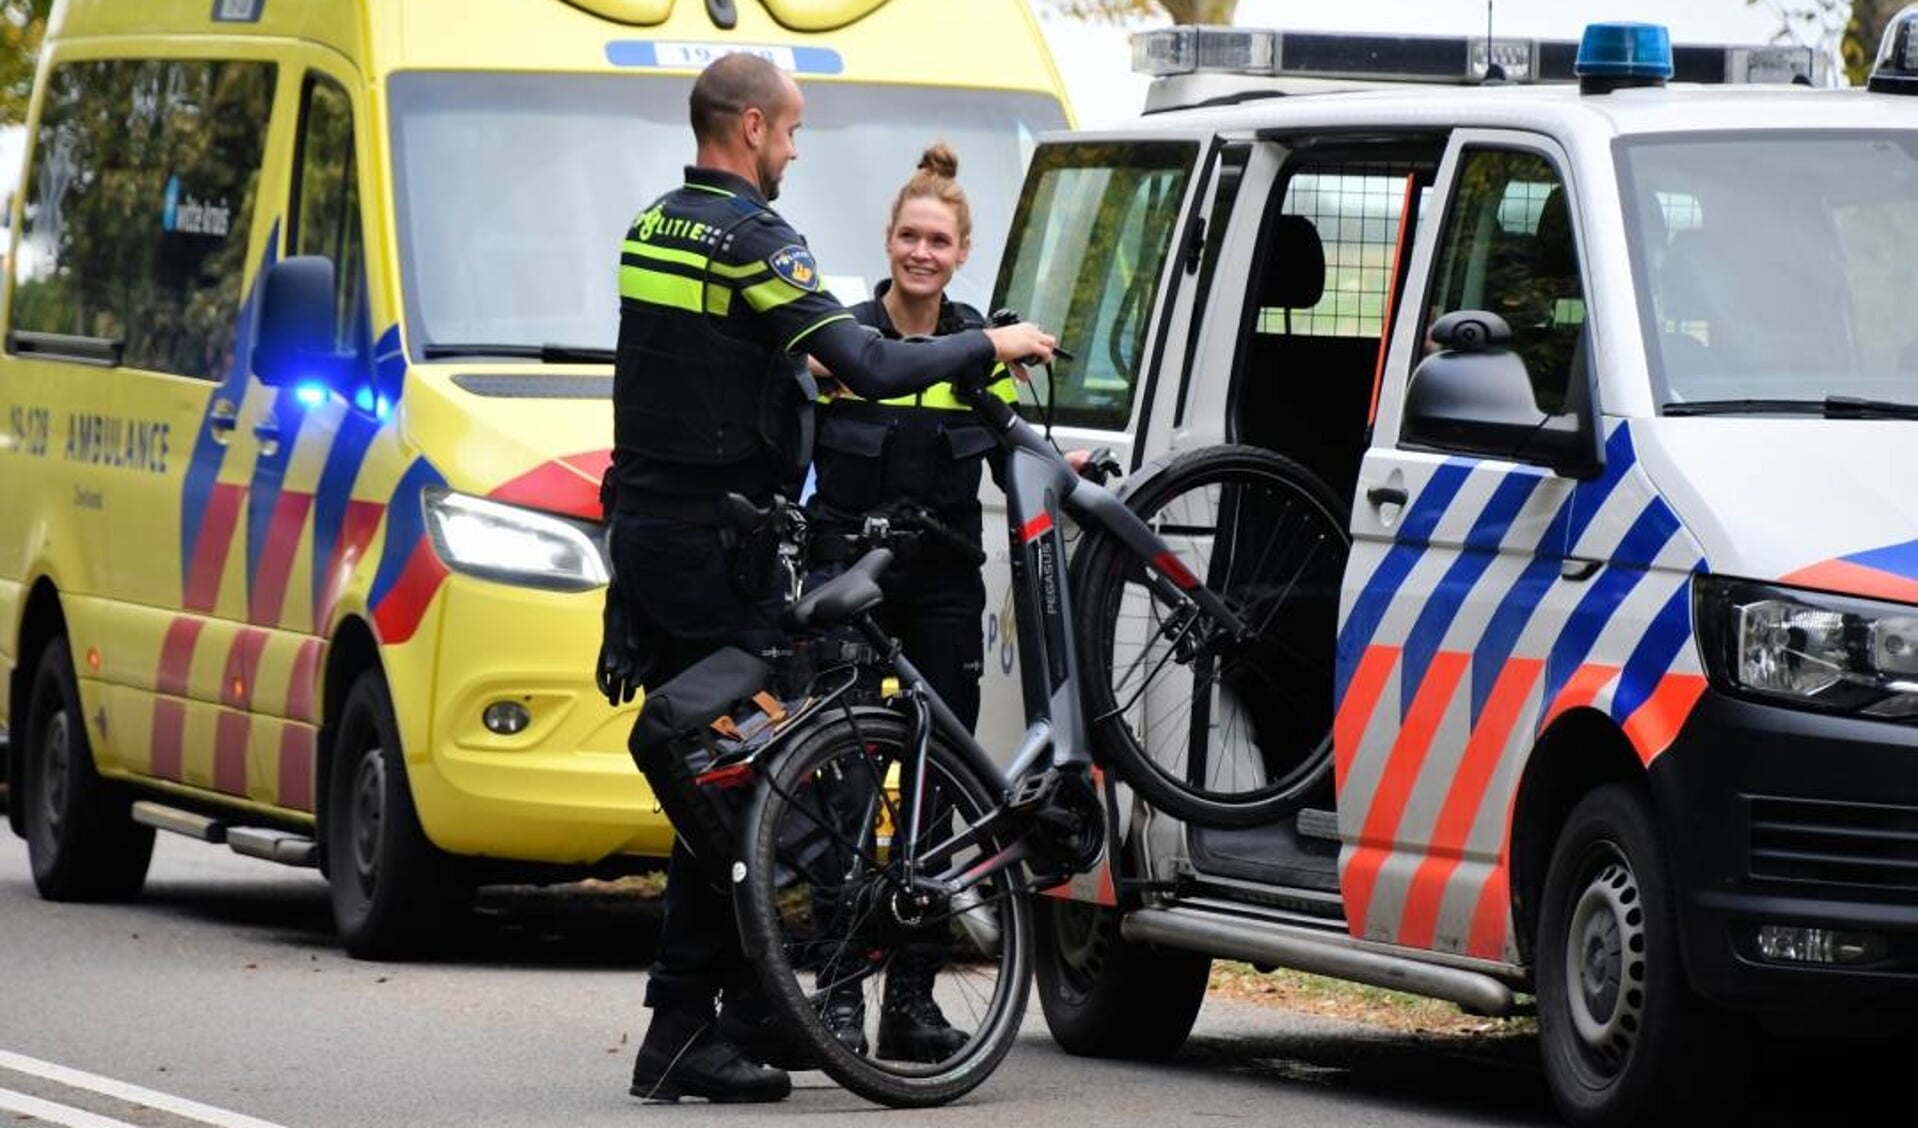 De politie laadt de fiets van het slachtoffer in een busje